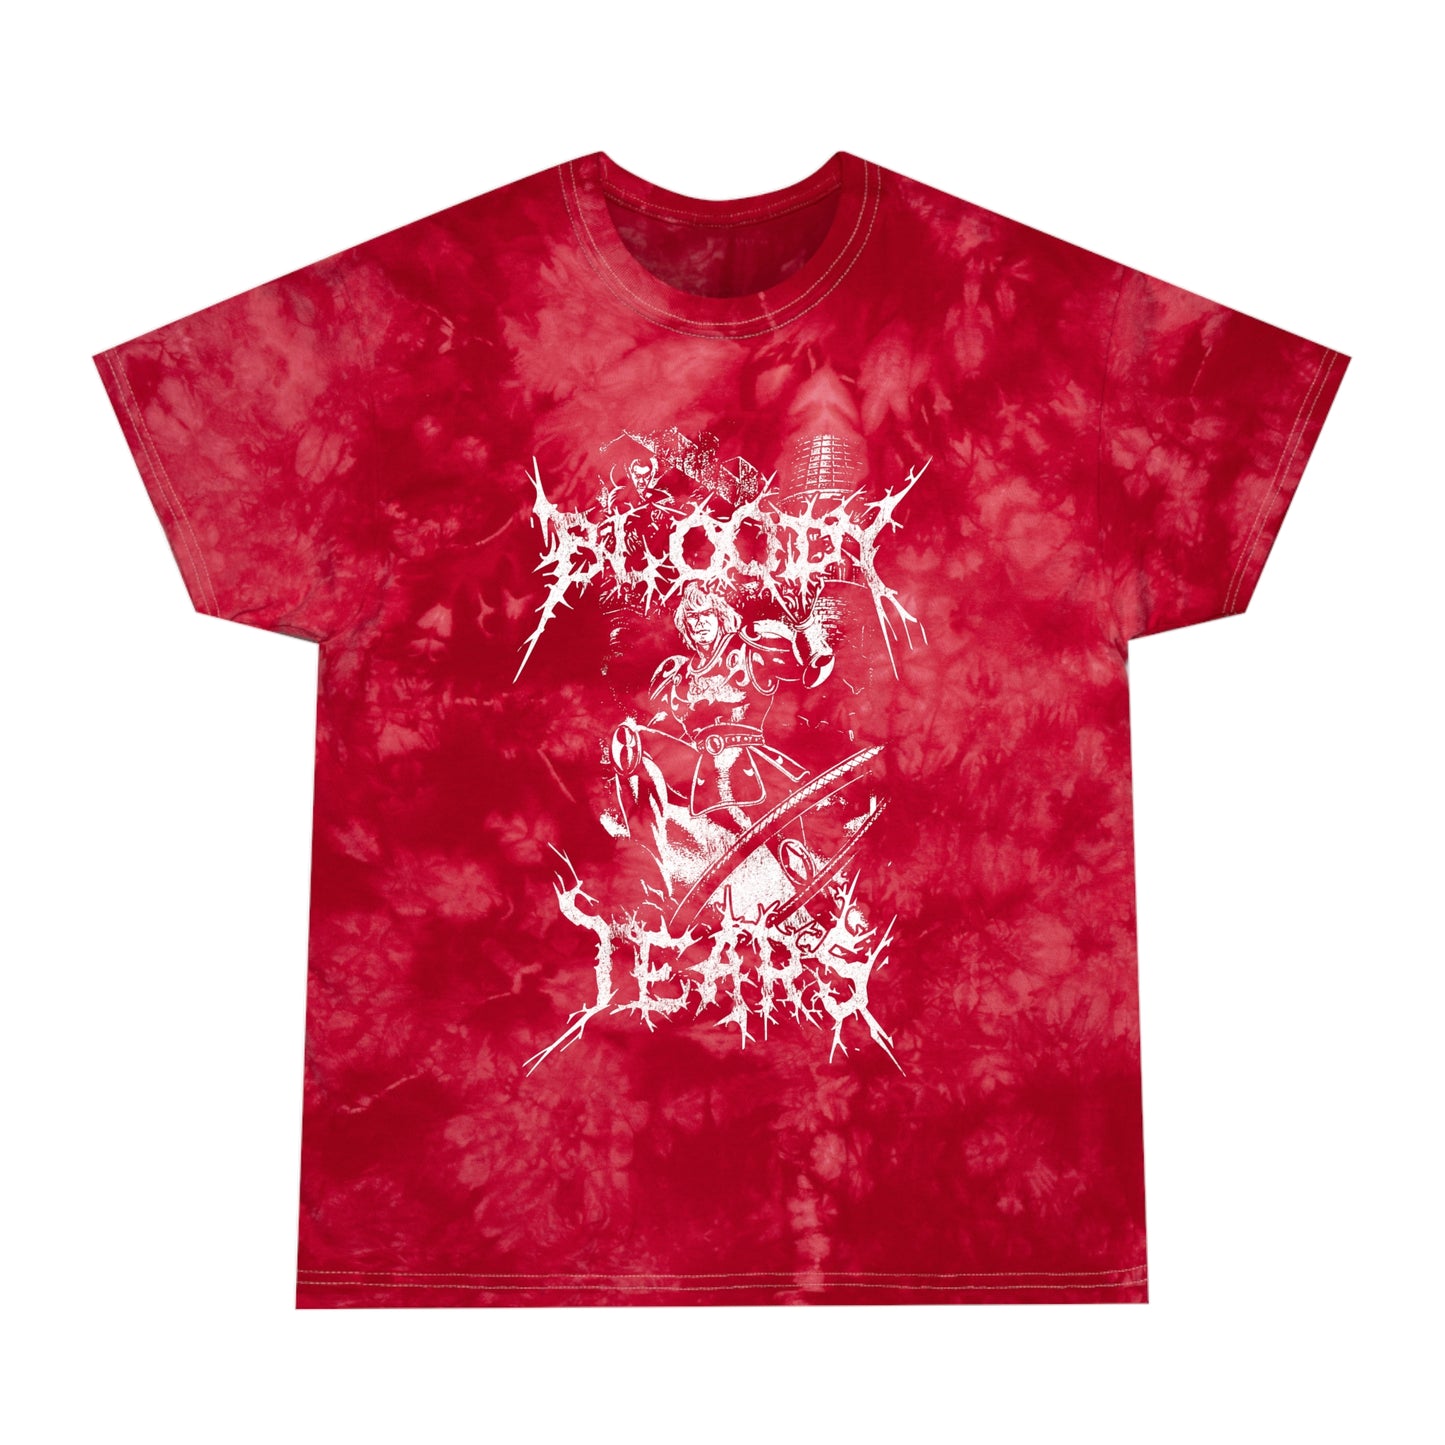 Bloody Tears tie-dye t-shirt